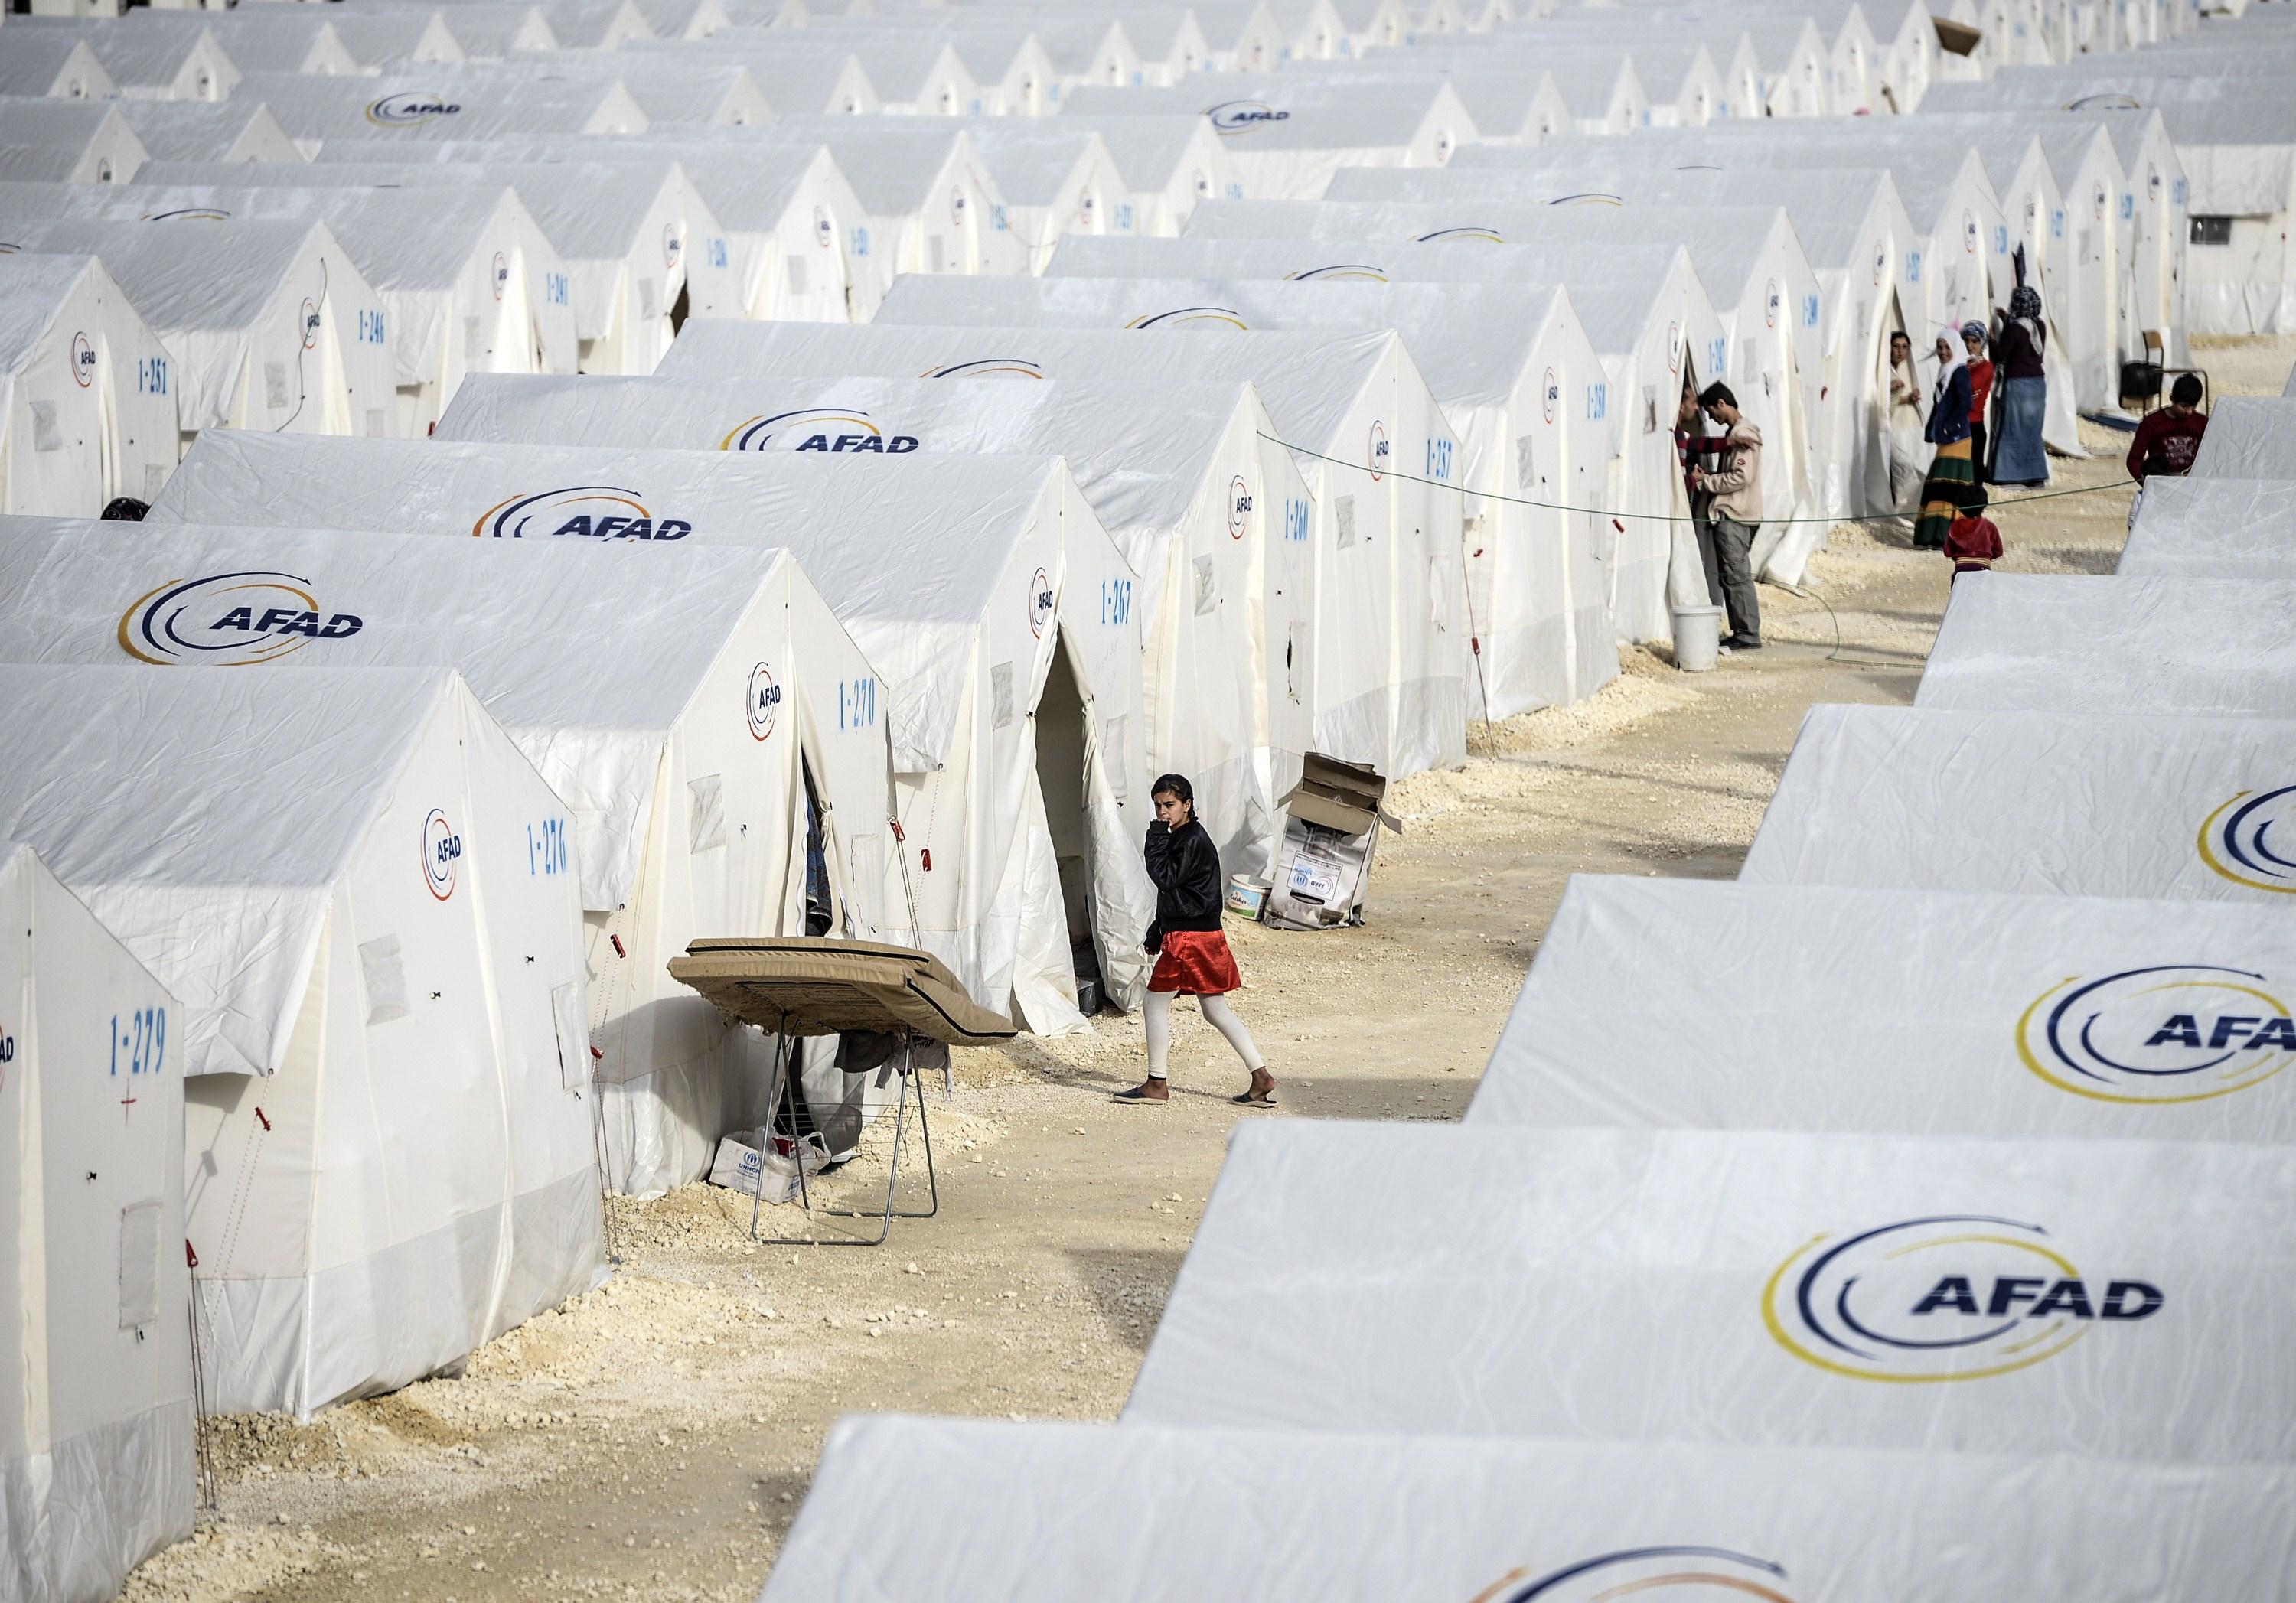 Turkiet får tre miljarder euro av EU för att förbättra villkoren för flyktingar och få dem att stanna kvar där. (Foto: Bulent Kilic /AFP/Getty Image)
 